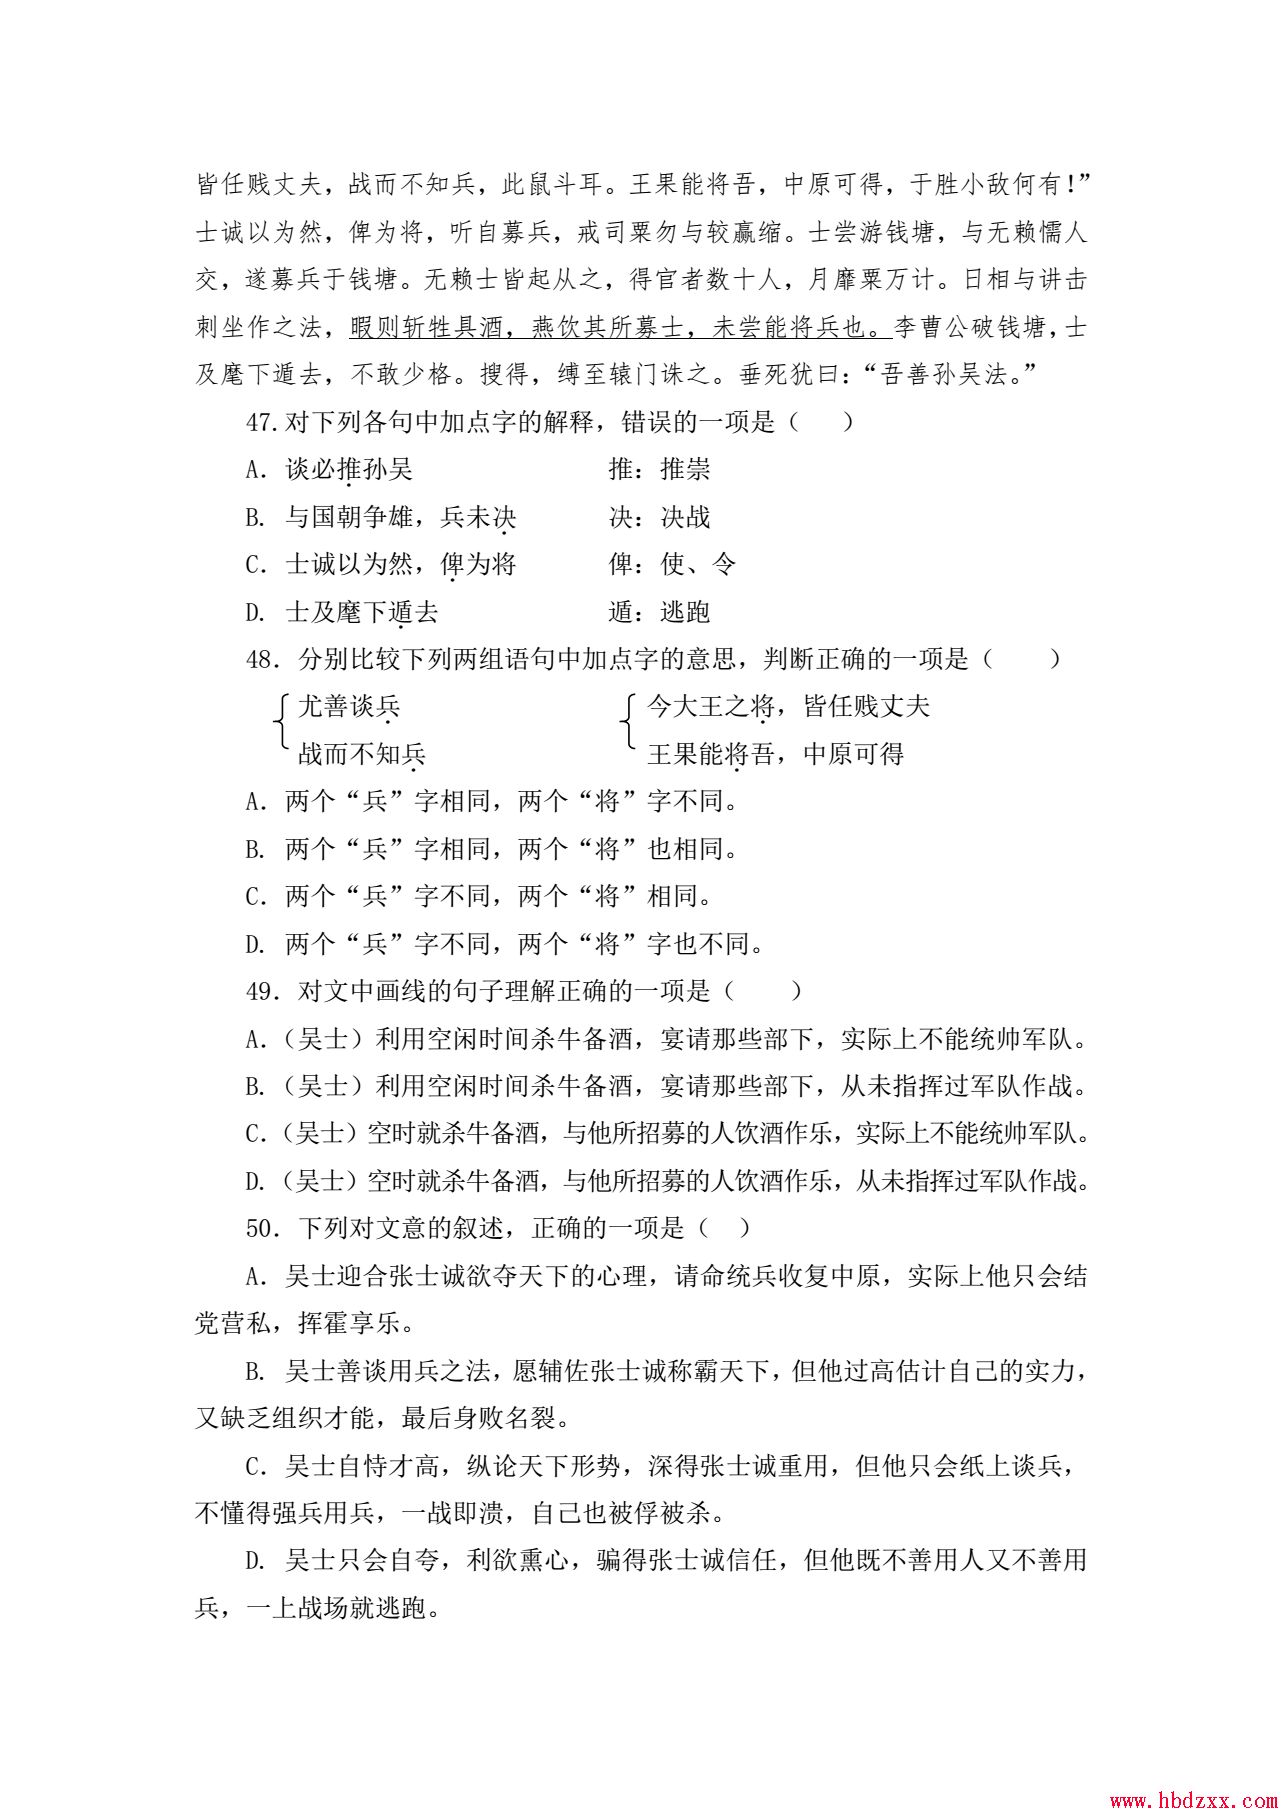 河北App职业技术学院2013年语文单招试题 图4